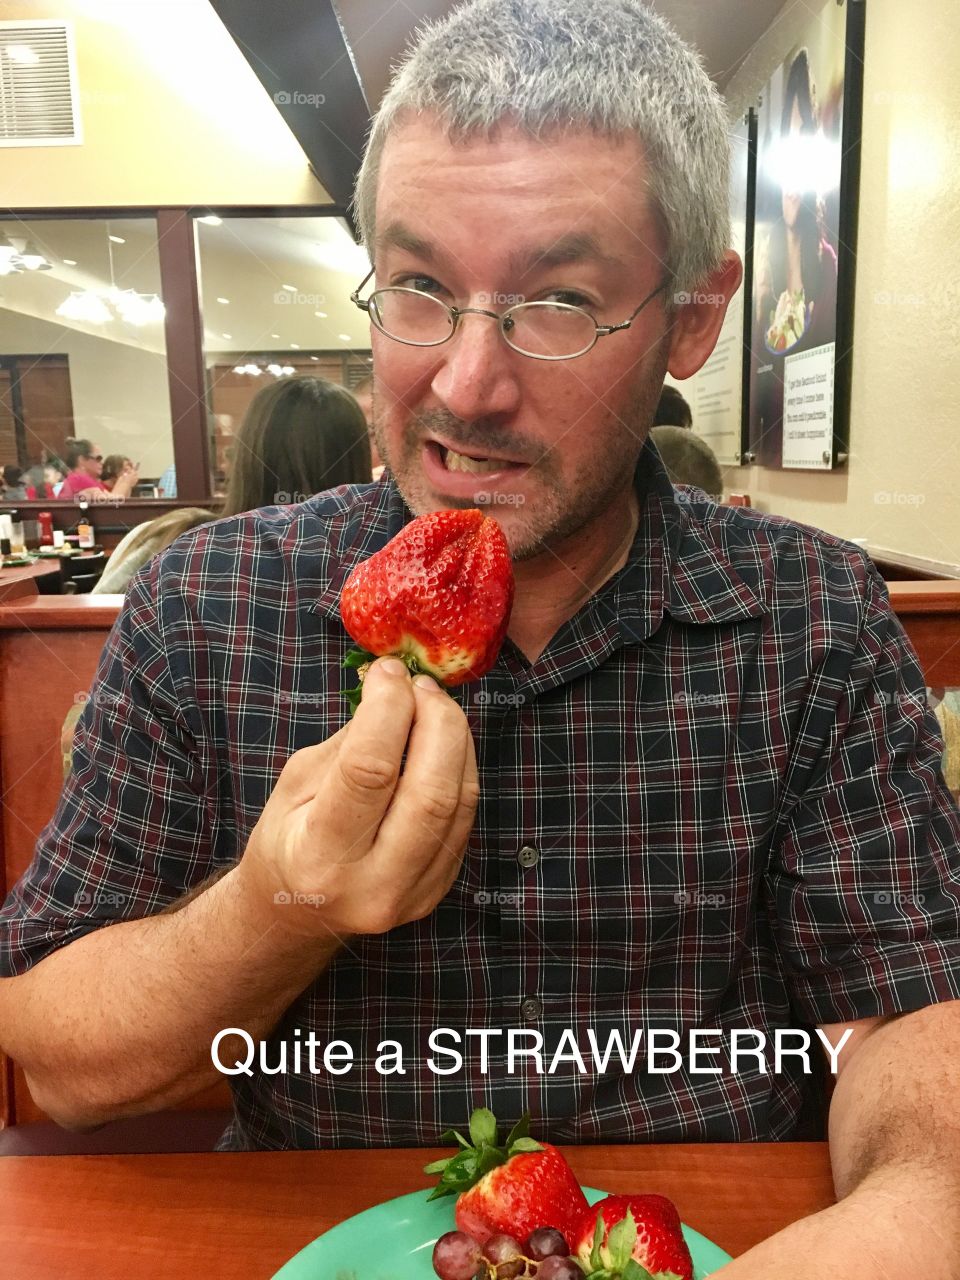 Quite a strawberry 